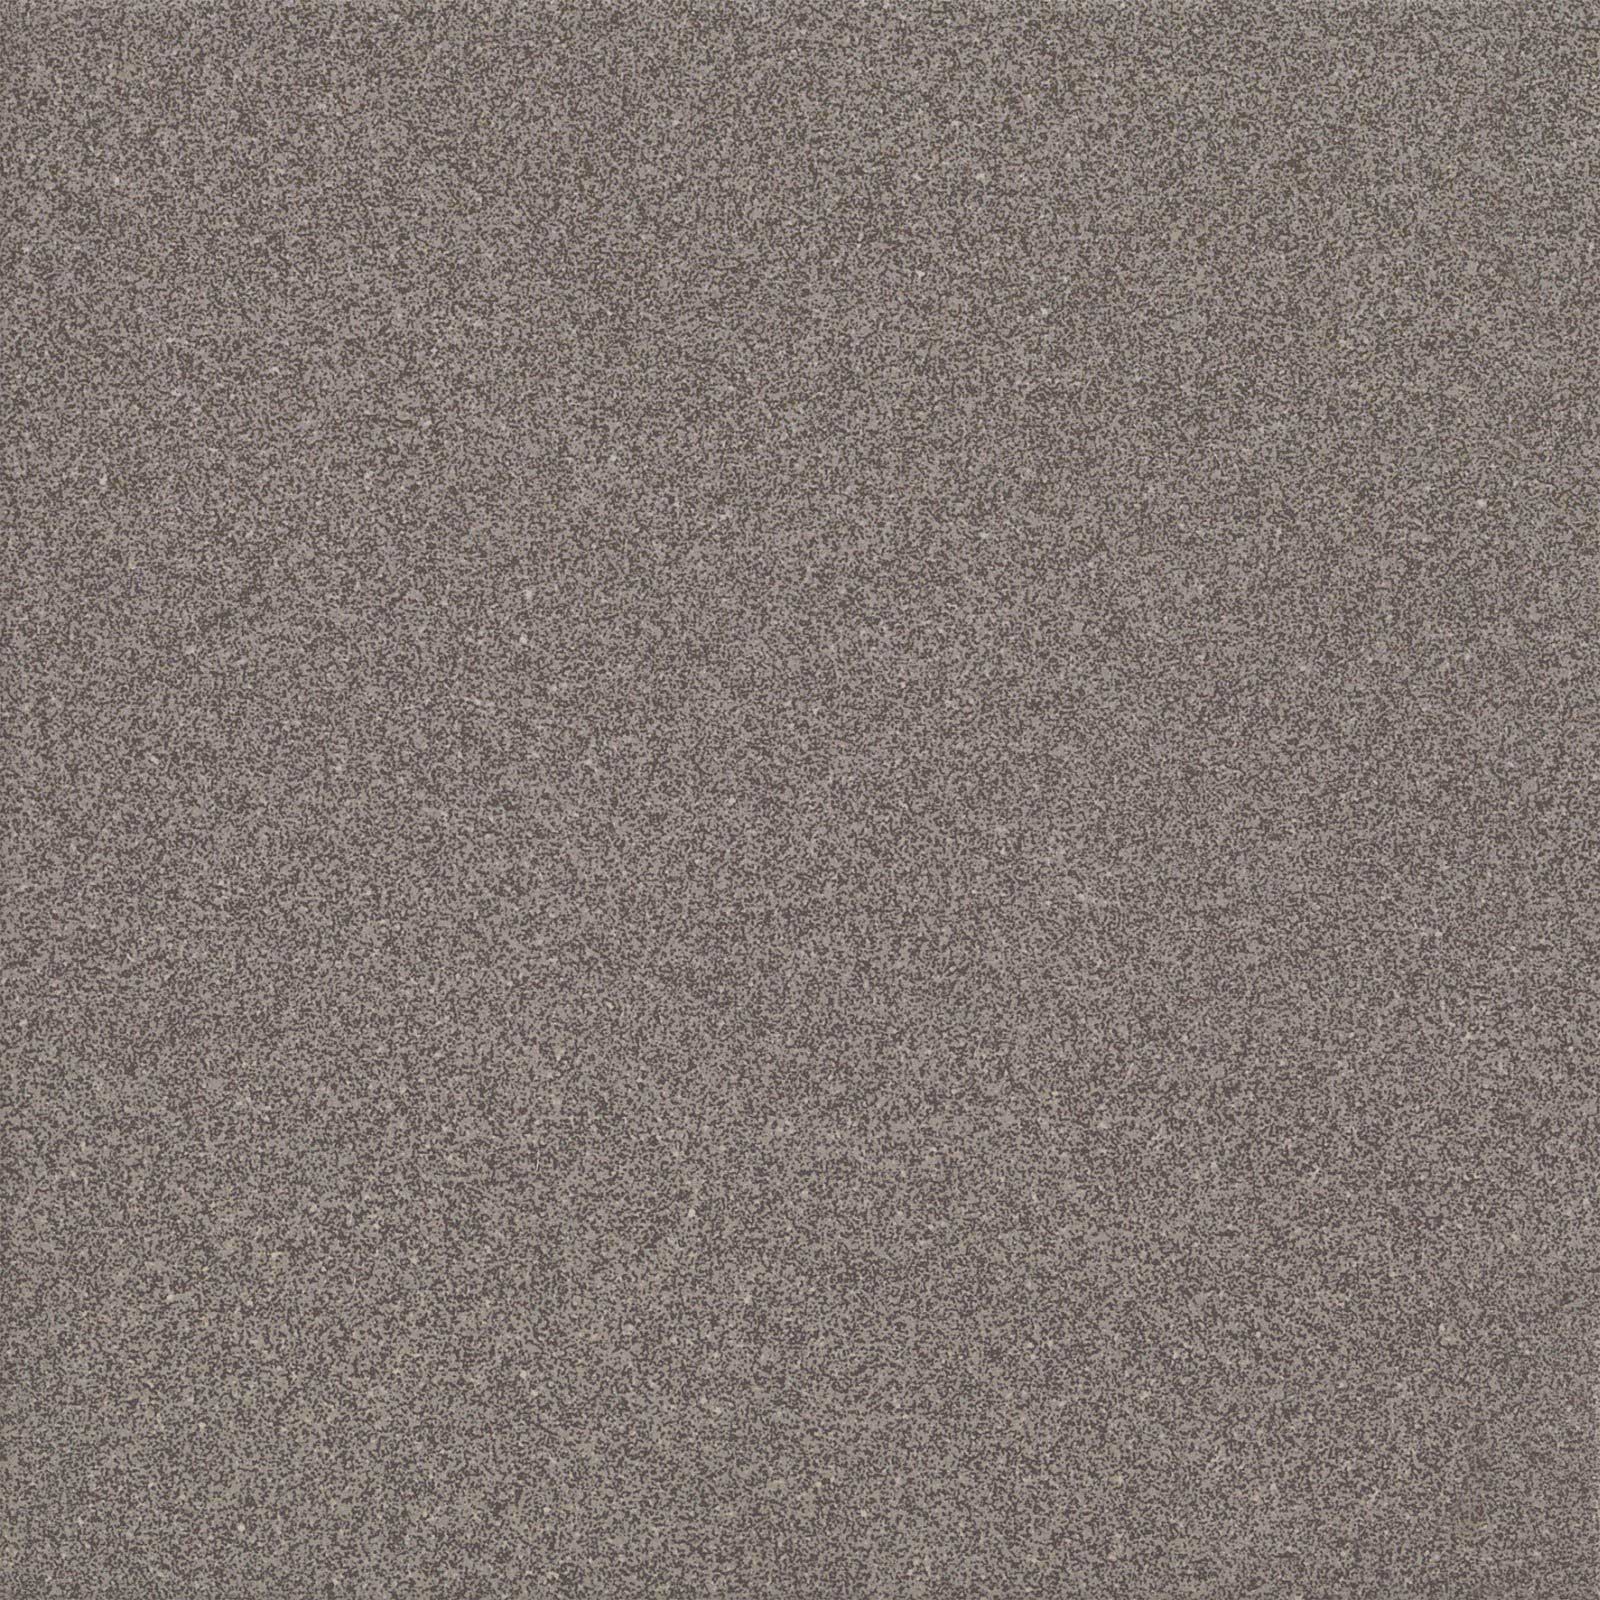 Керамогранит Плитка из керамогранита Marazzi Italy Sistem T Graniti 30x30 серый (MRTE) / коллекция Marazzi Italy / производитель Marazzi Italy / страна Италия